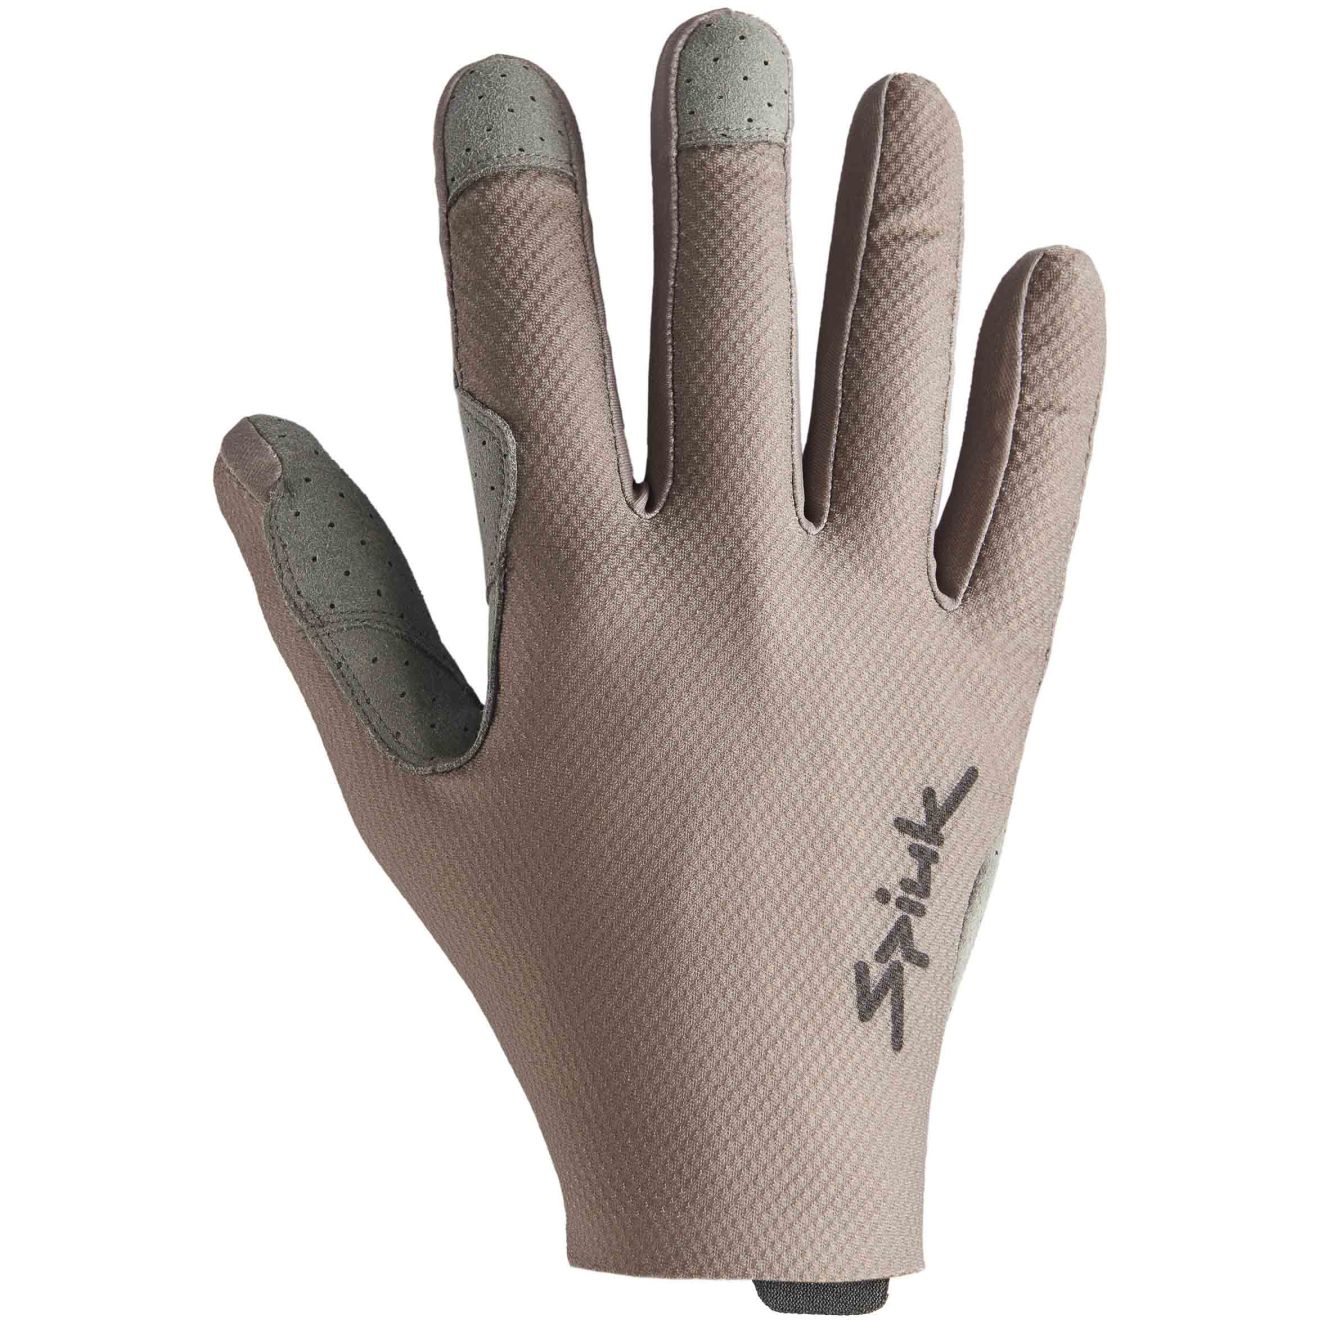 Productfoto van Spiuk ALL TERRAIN Gravel Handschoenen - bruin